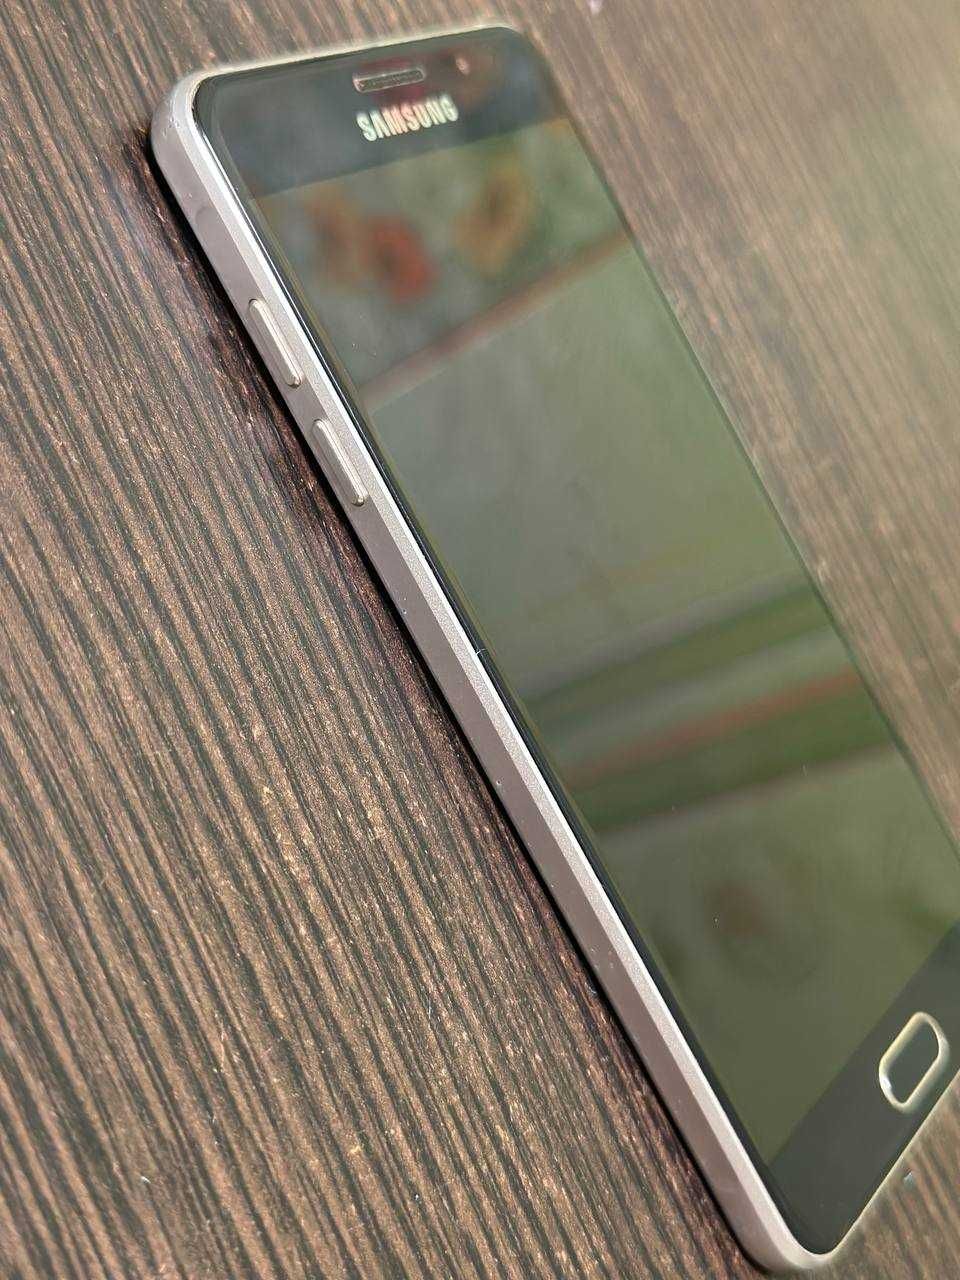 Смартфон Samsung Galaxy A5 2016 A510F Duos Edition GOLD 2/16